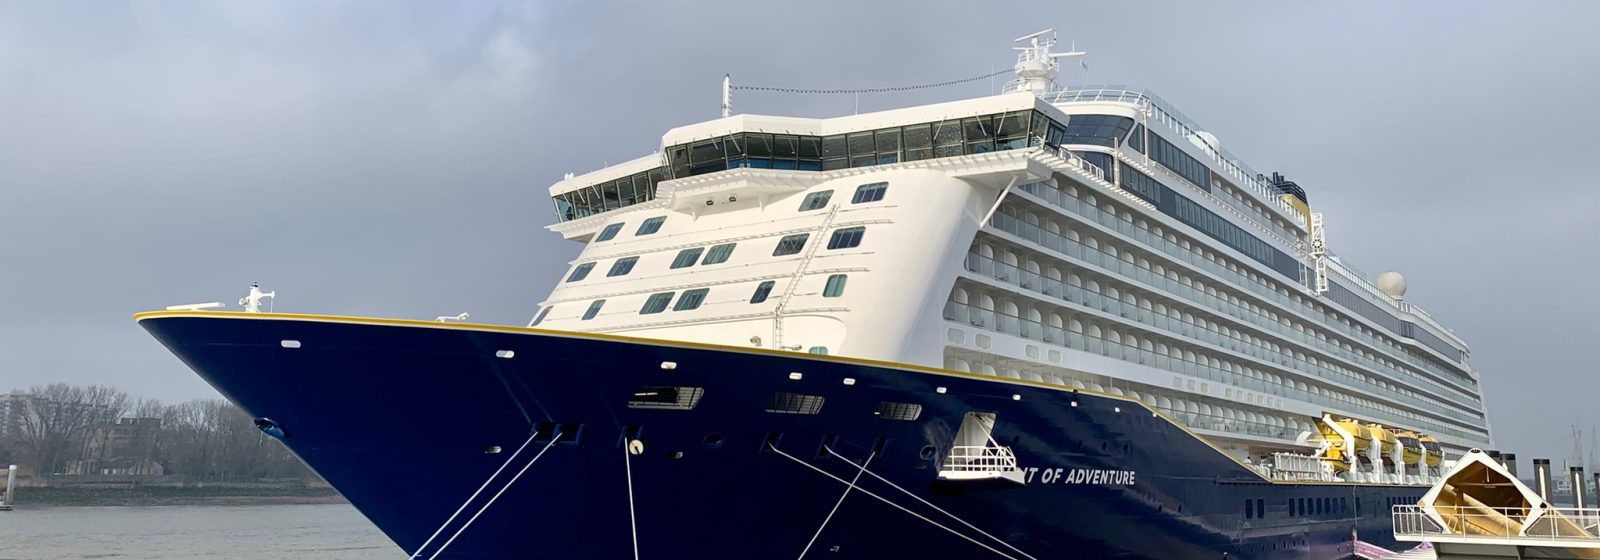 De 'Spirit of Adventure' van SAGA Cruises tijdens zijn first call of port in Antwerpen